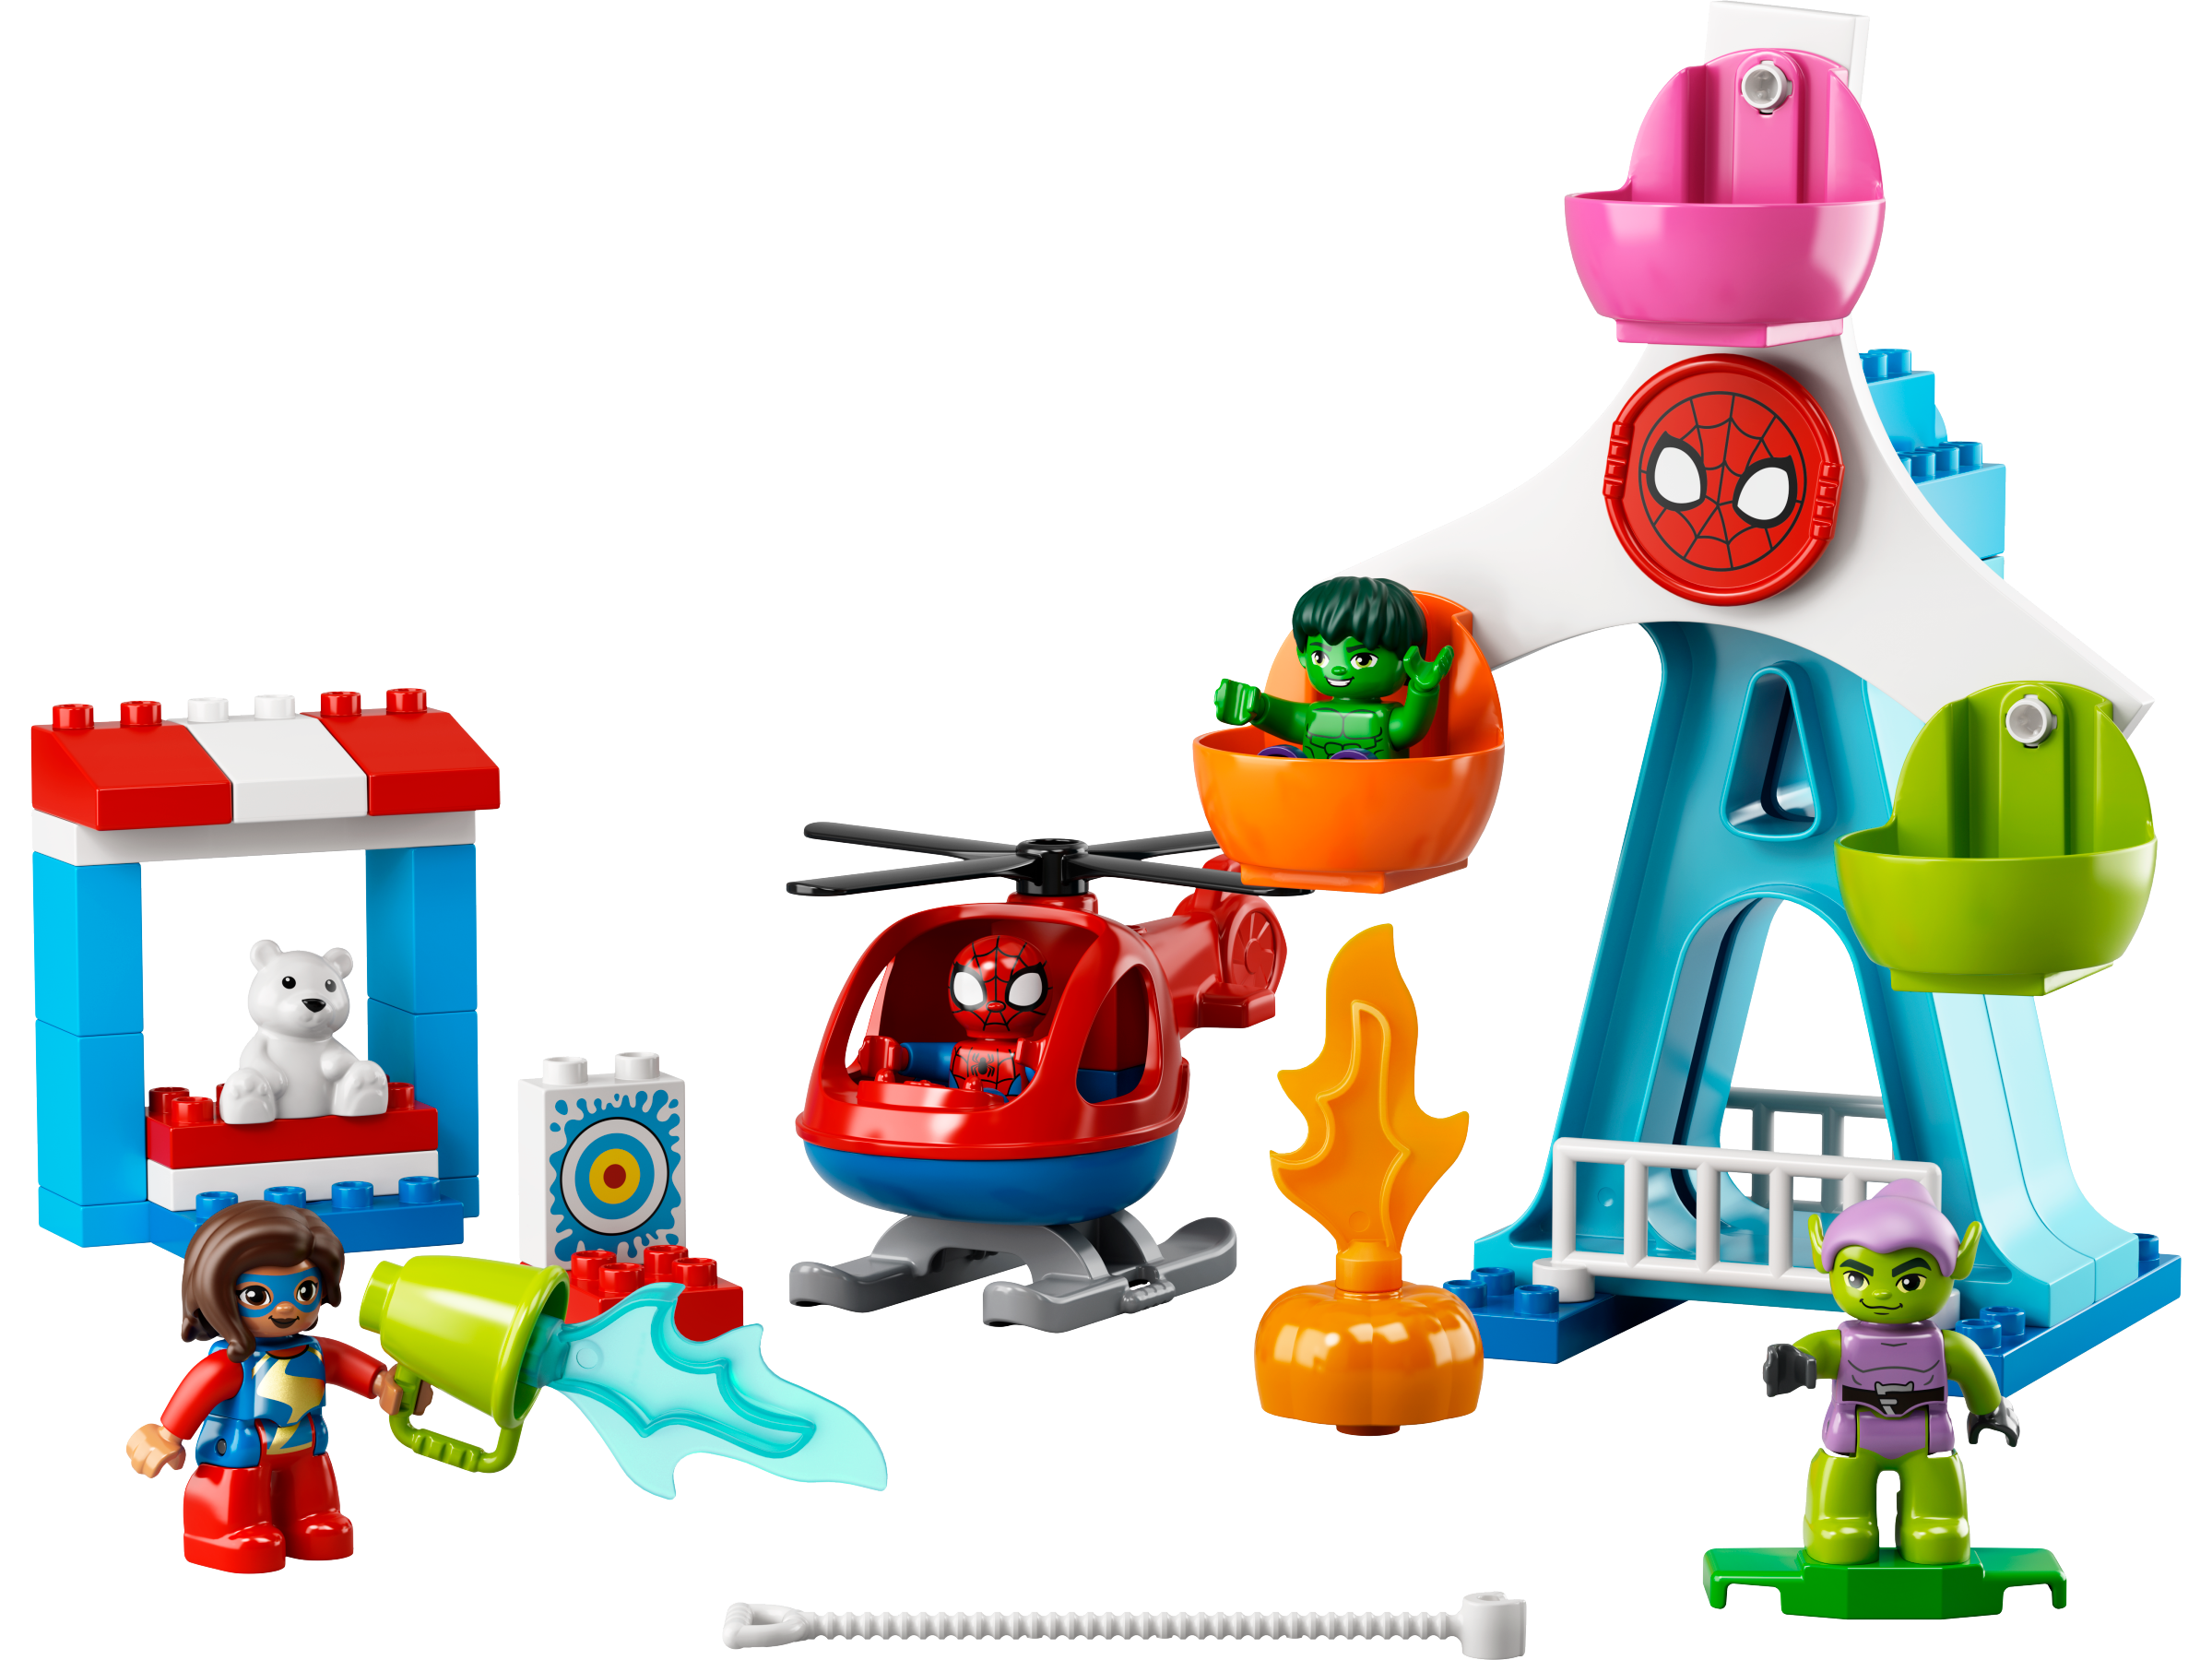 Herinnering licentie Ontwikkelen Cadeaus en speelgoed voor kinderen vanaf 1,5 jaar | Peuters van 18 maanden  tot 3 jaar | Officiële LEGO® winkel NL